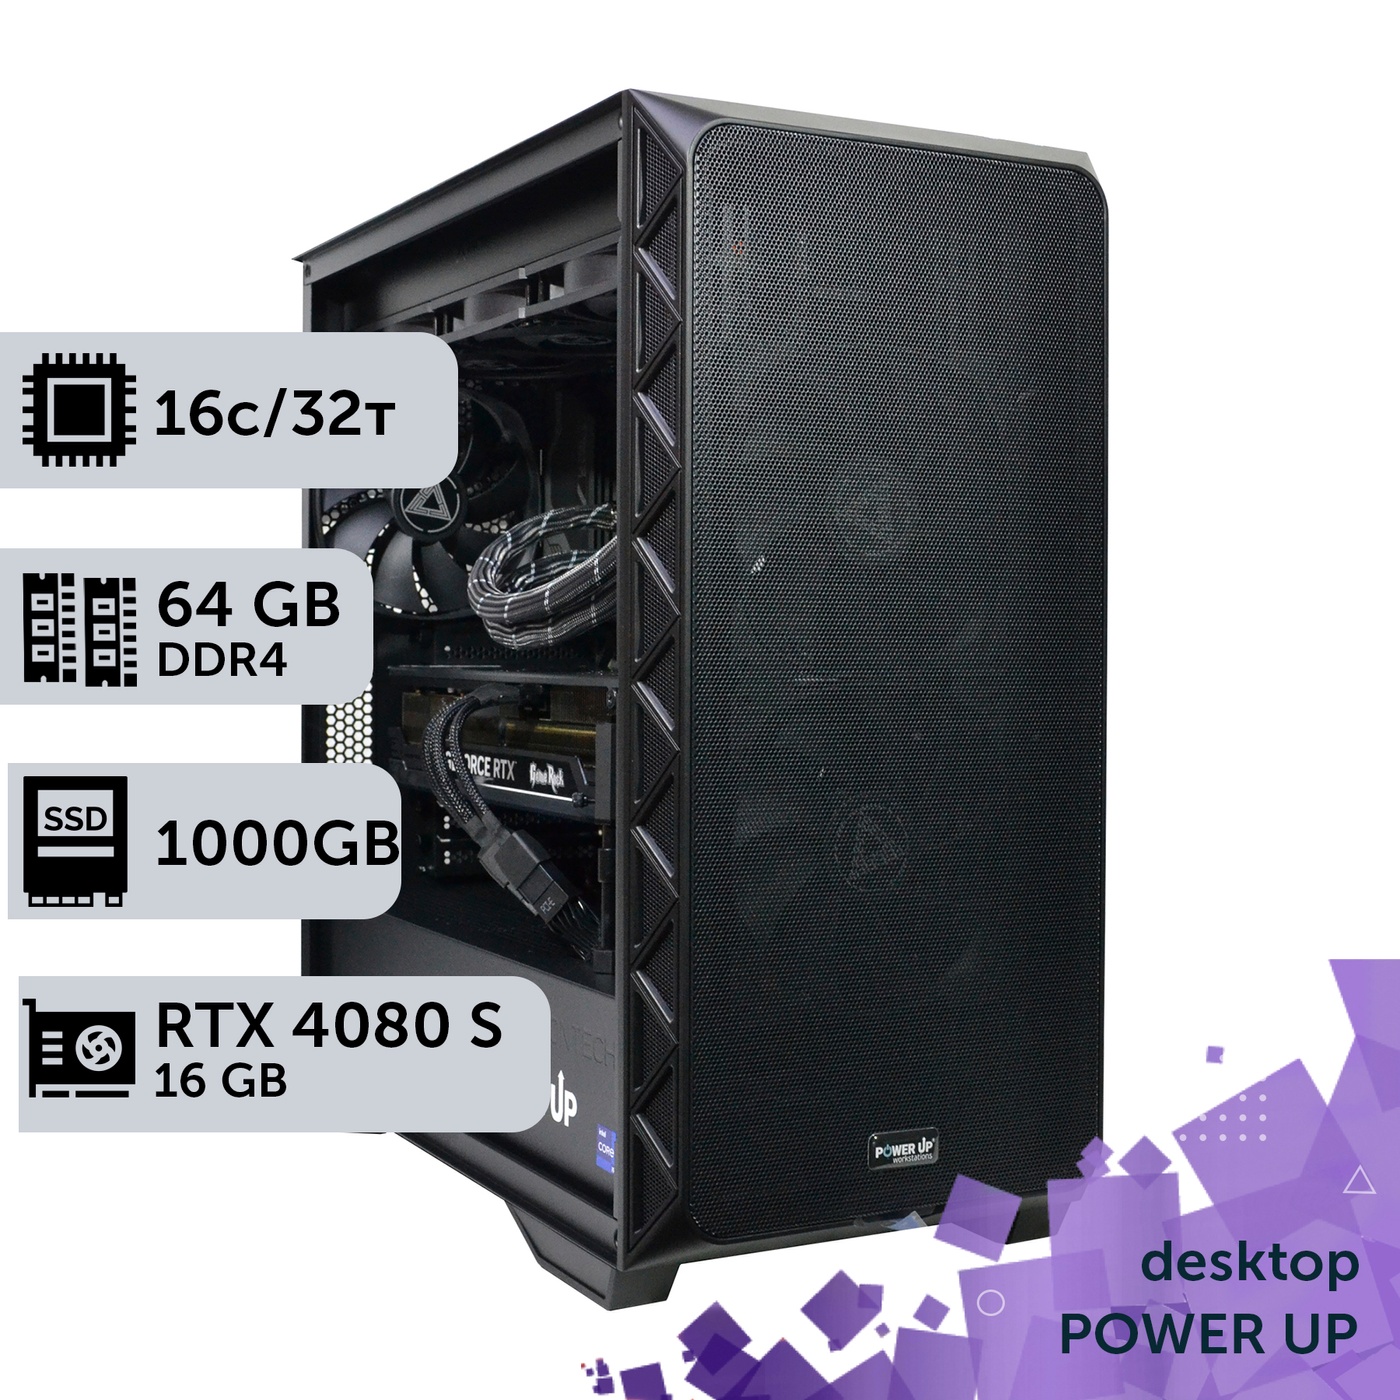 Рабочая станция PowerUp Desktop #368 Ryzen 9 5950x/64 GB/HDD 2 TB/SSD 1TB/GeForce RTX 4080 Super 16GB